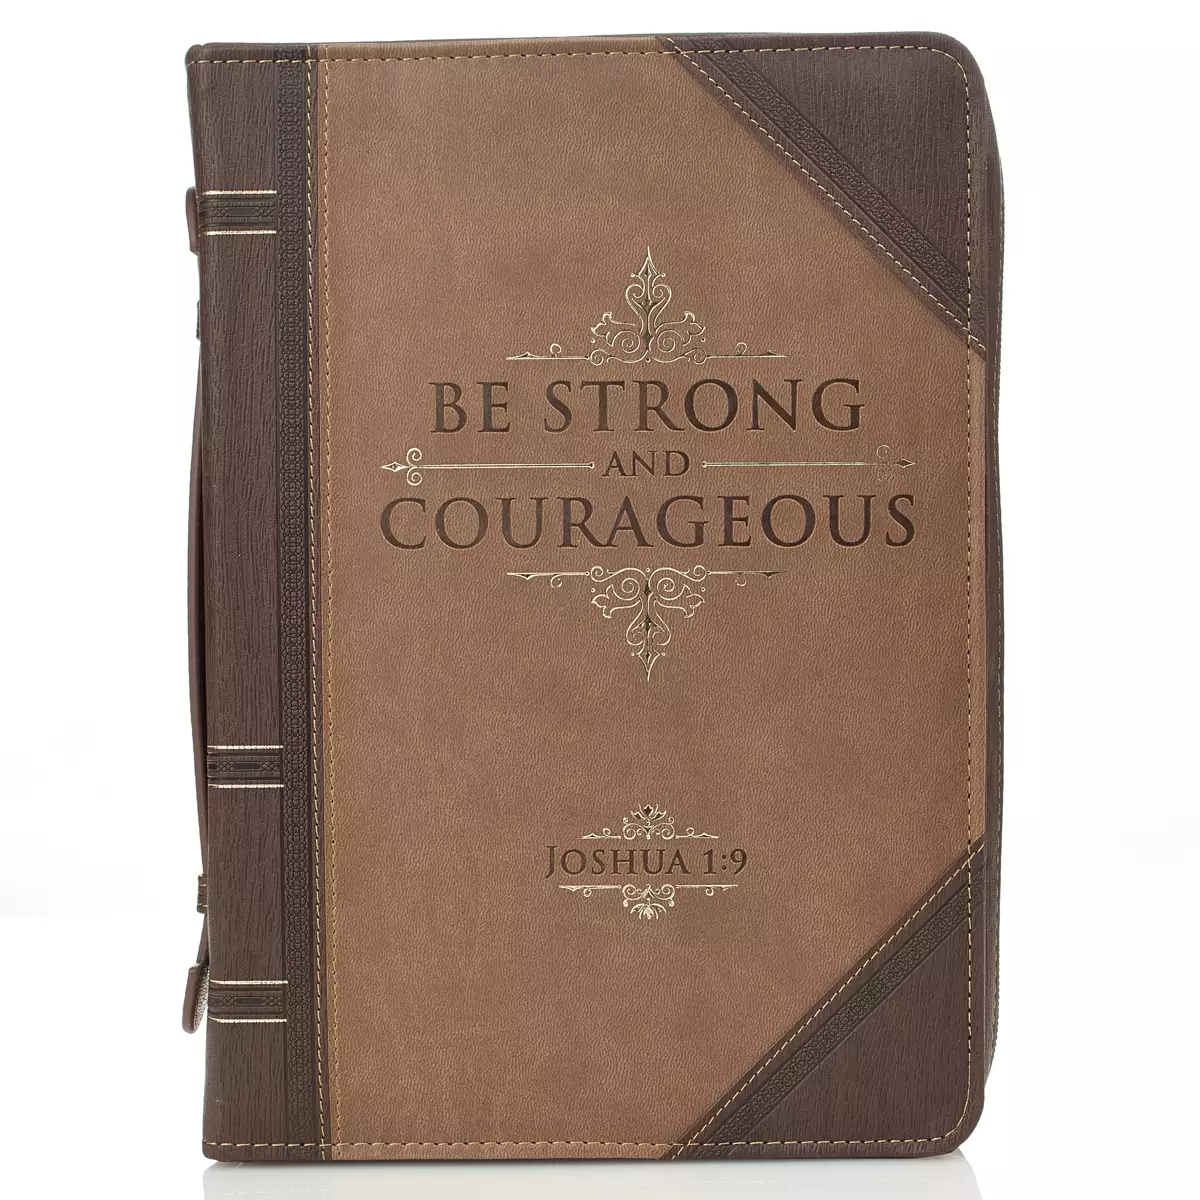 Medium Antique "Be Strong & Courageous" Bible Cover - Joshua 1:9